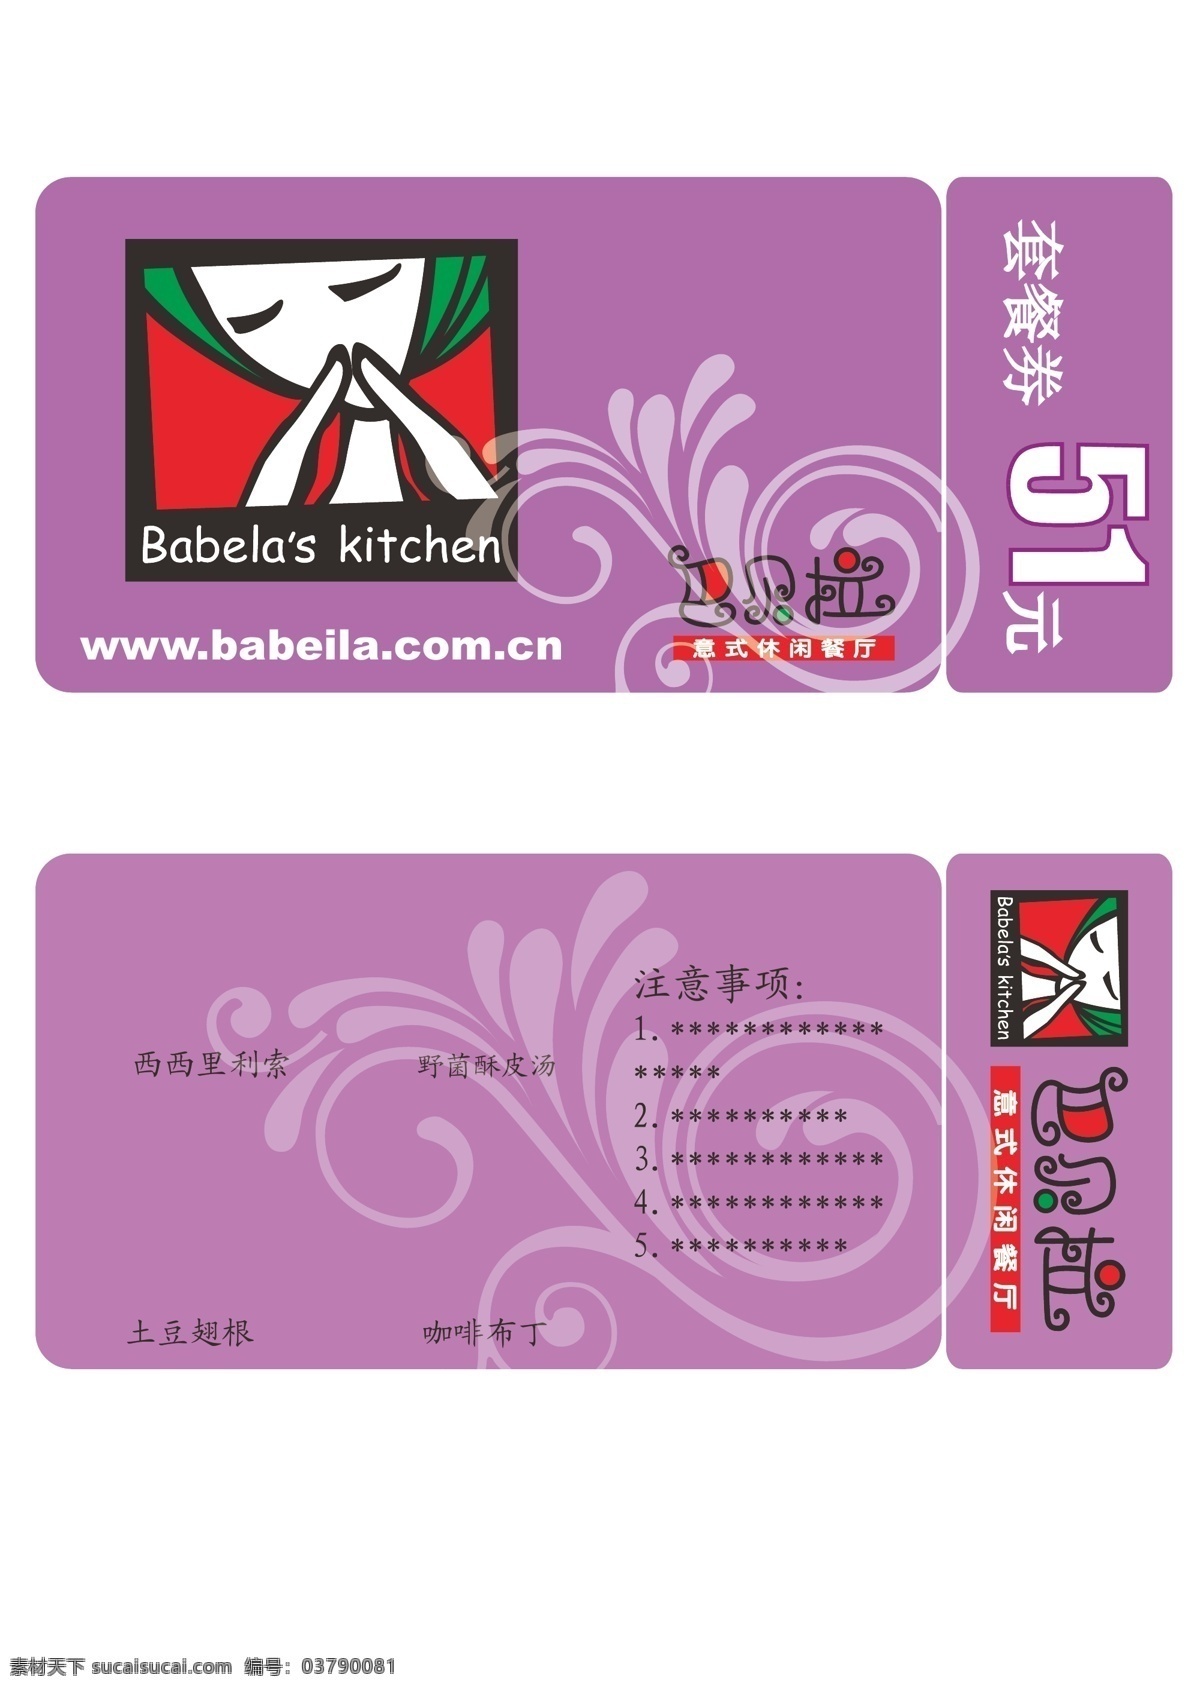 套餐券 矢量图 巴贝拉 紫色系 花纹 其他设计 矢量图库 白色